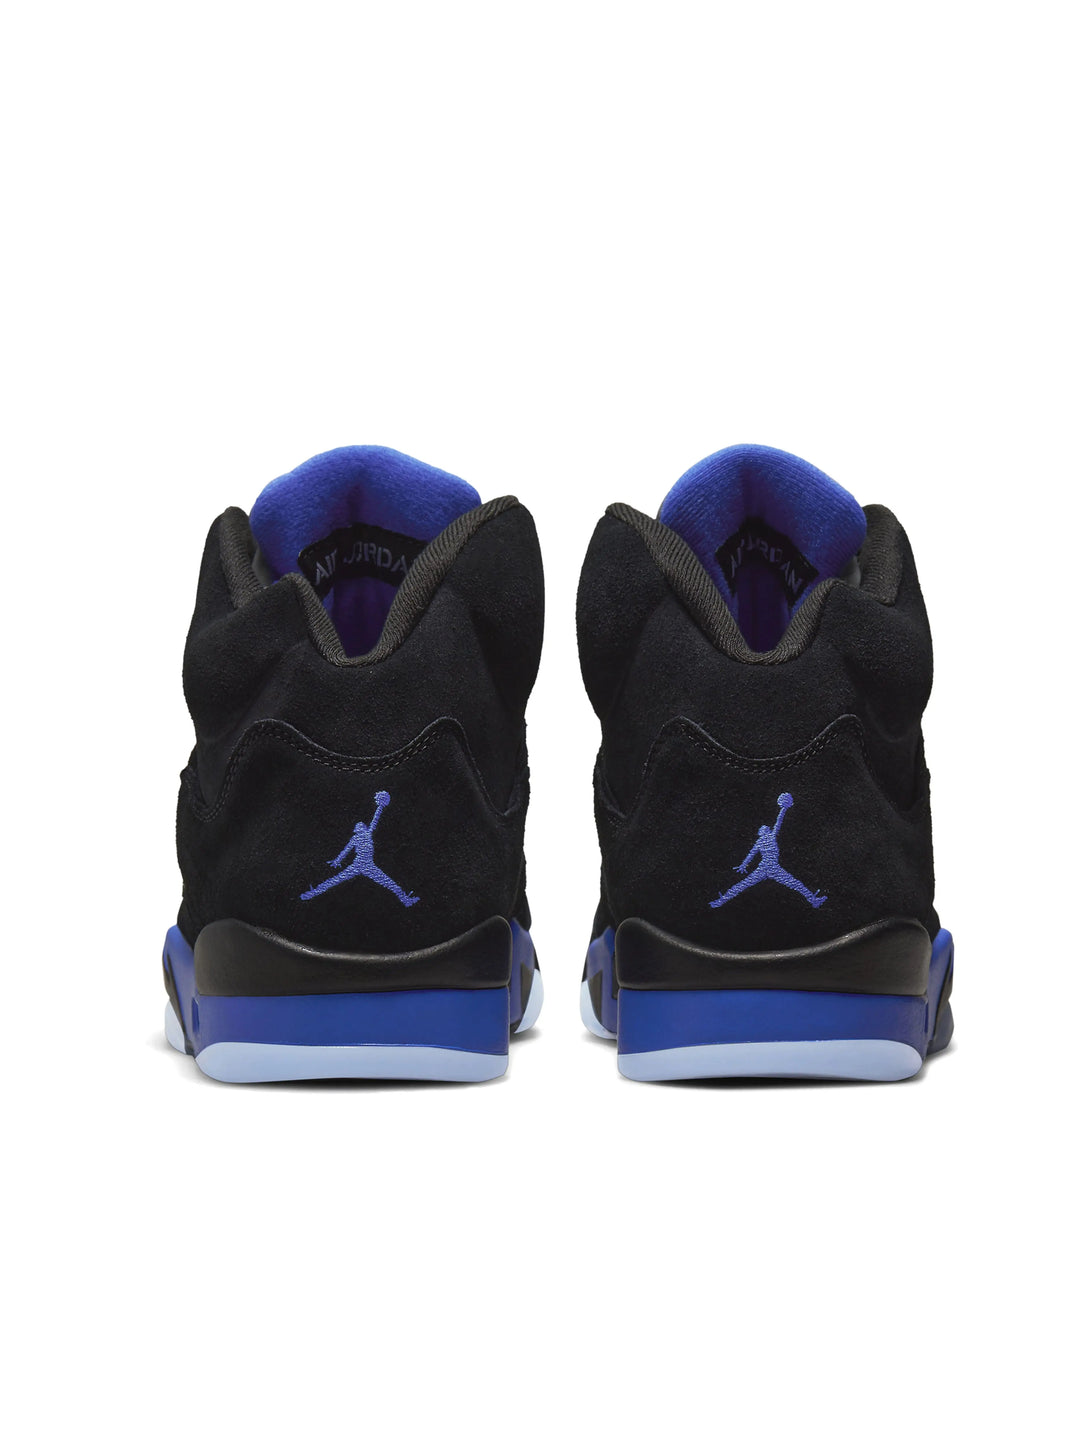 Nike Air Jordan 5 Retro Racer Blue (2022) Prior